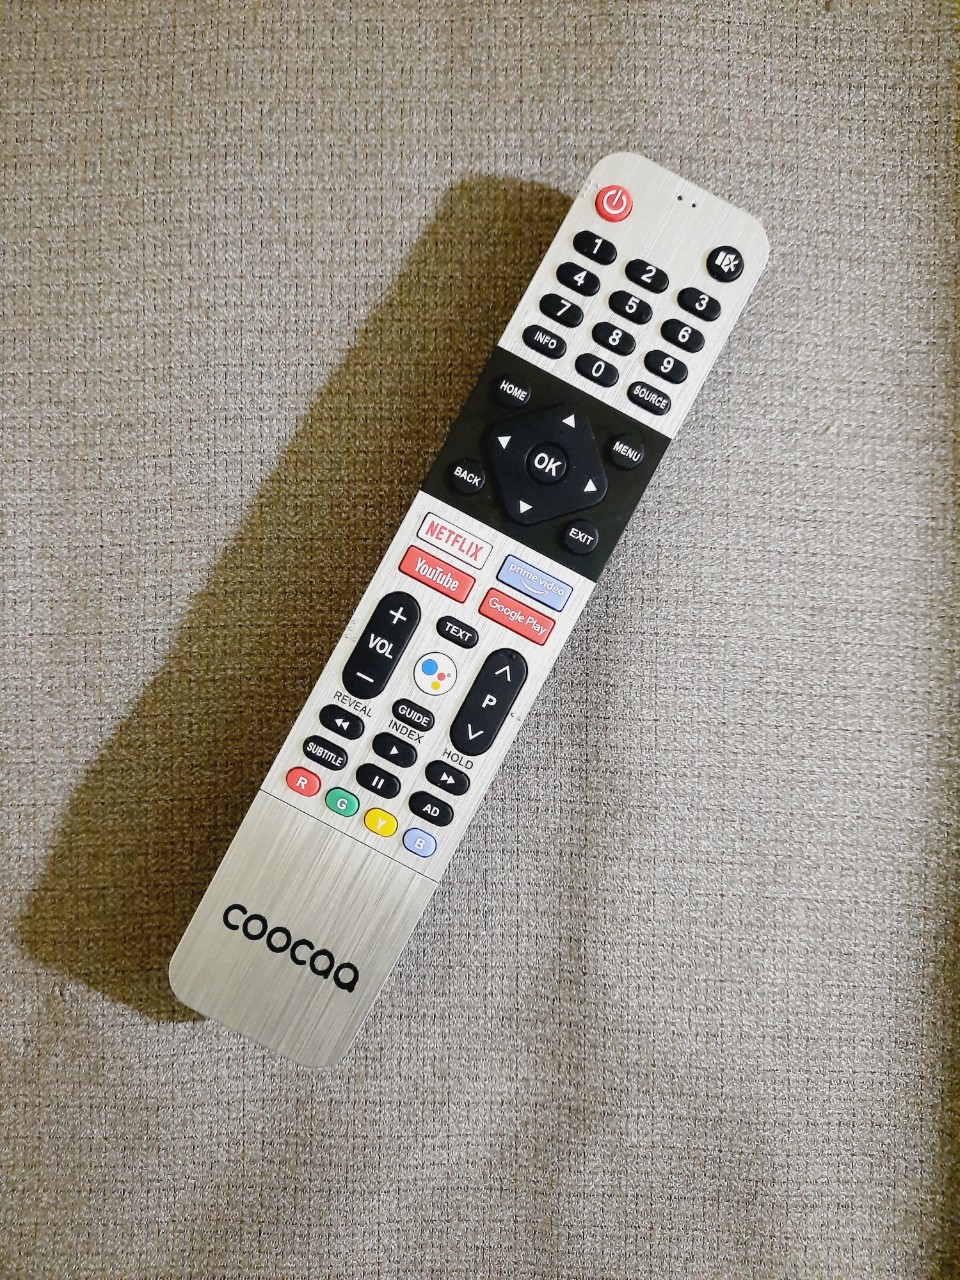 Remote Điều khiển tivi Coocaa giọng nói- Hàng mới 100% Tặng kèm Pin!!!